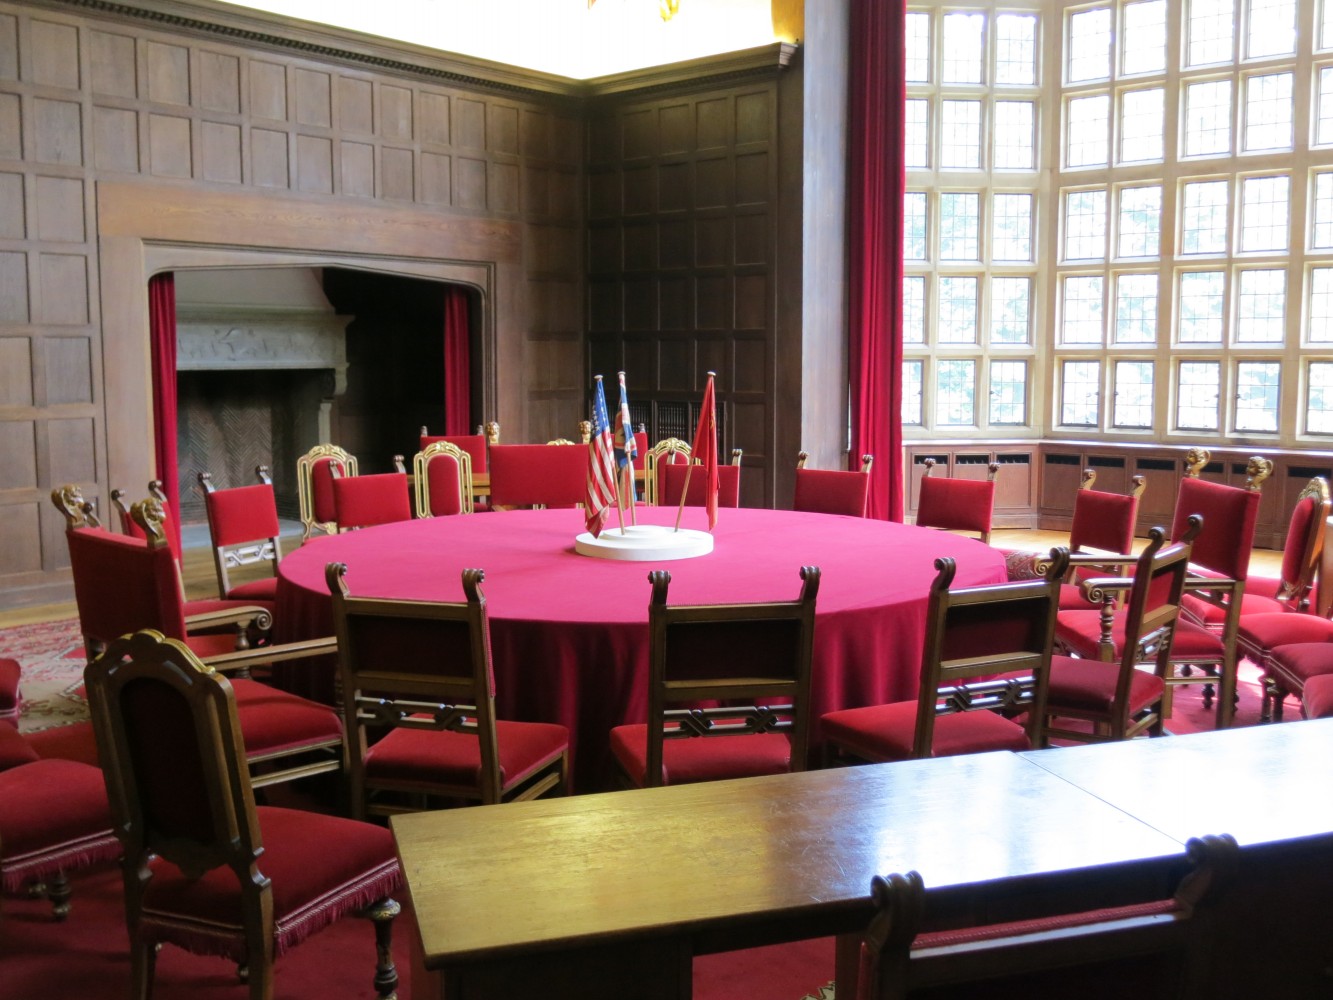 De conferentietafel in Schloss Cecilienhof in Potsdam. Foto: Flickr/Ian Gray/cc